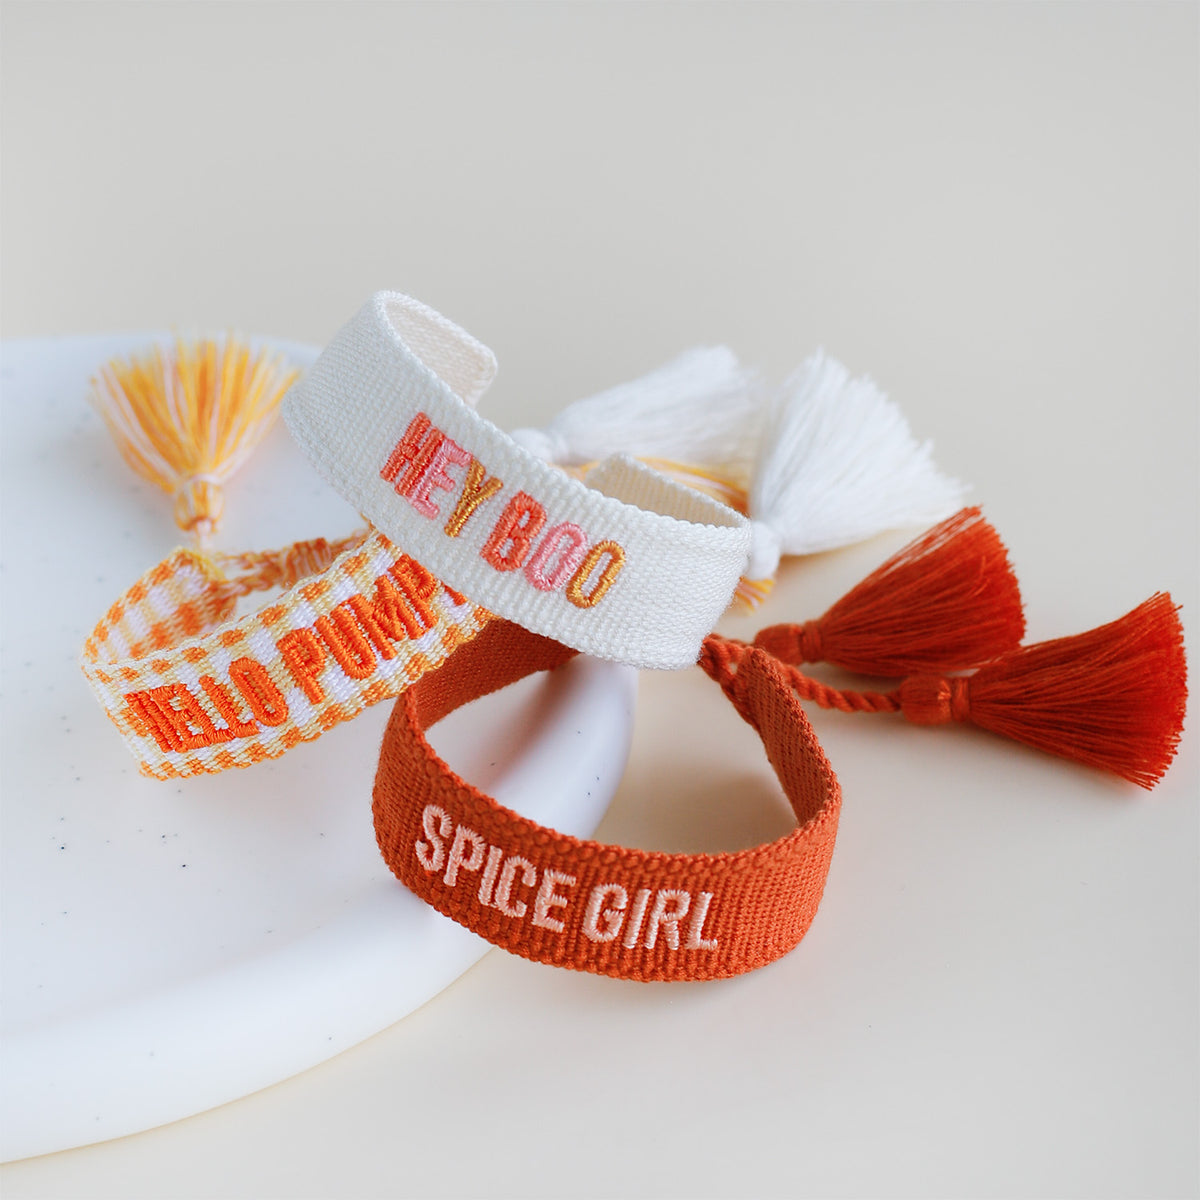 Woven Tassel Bracelet - Spice Girl